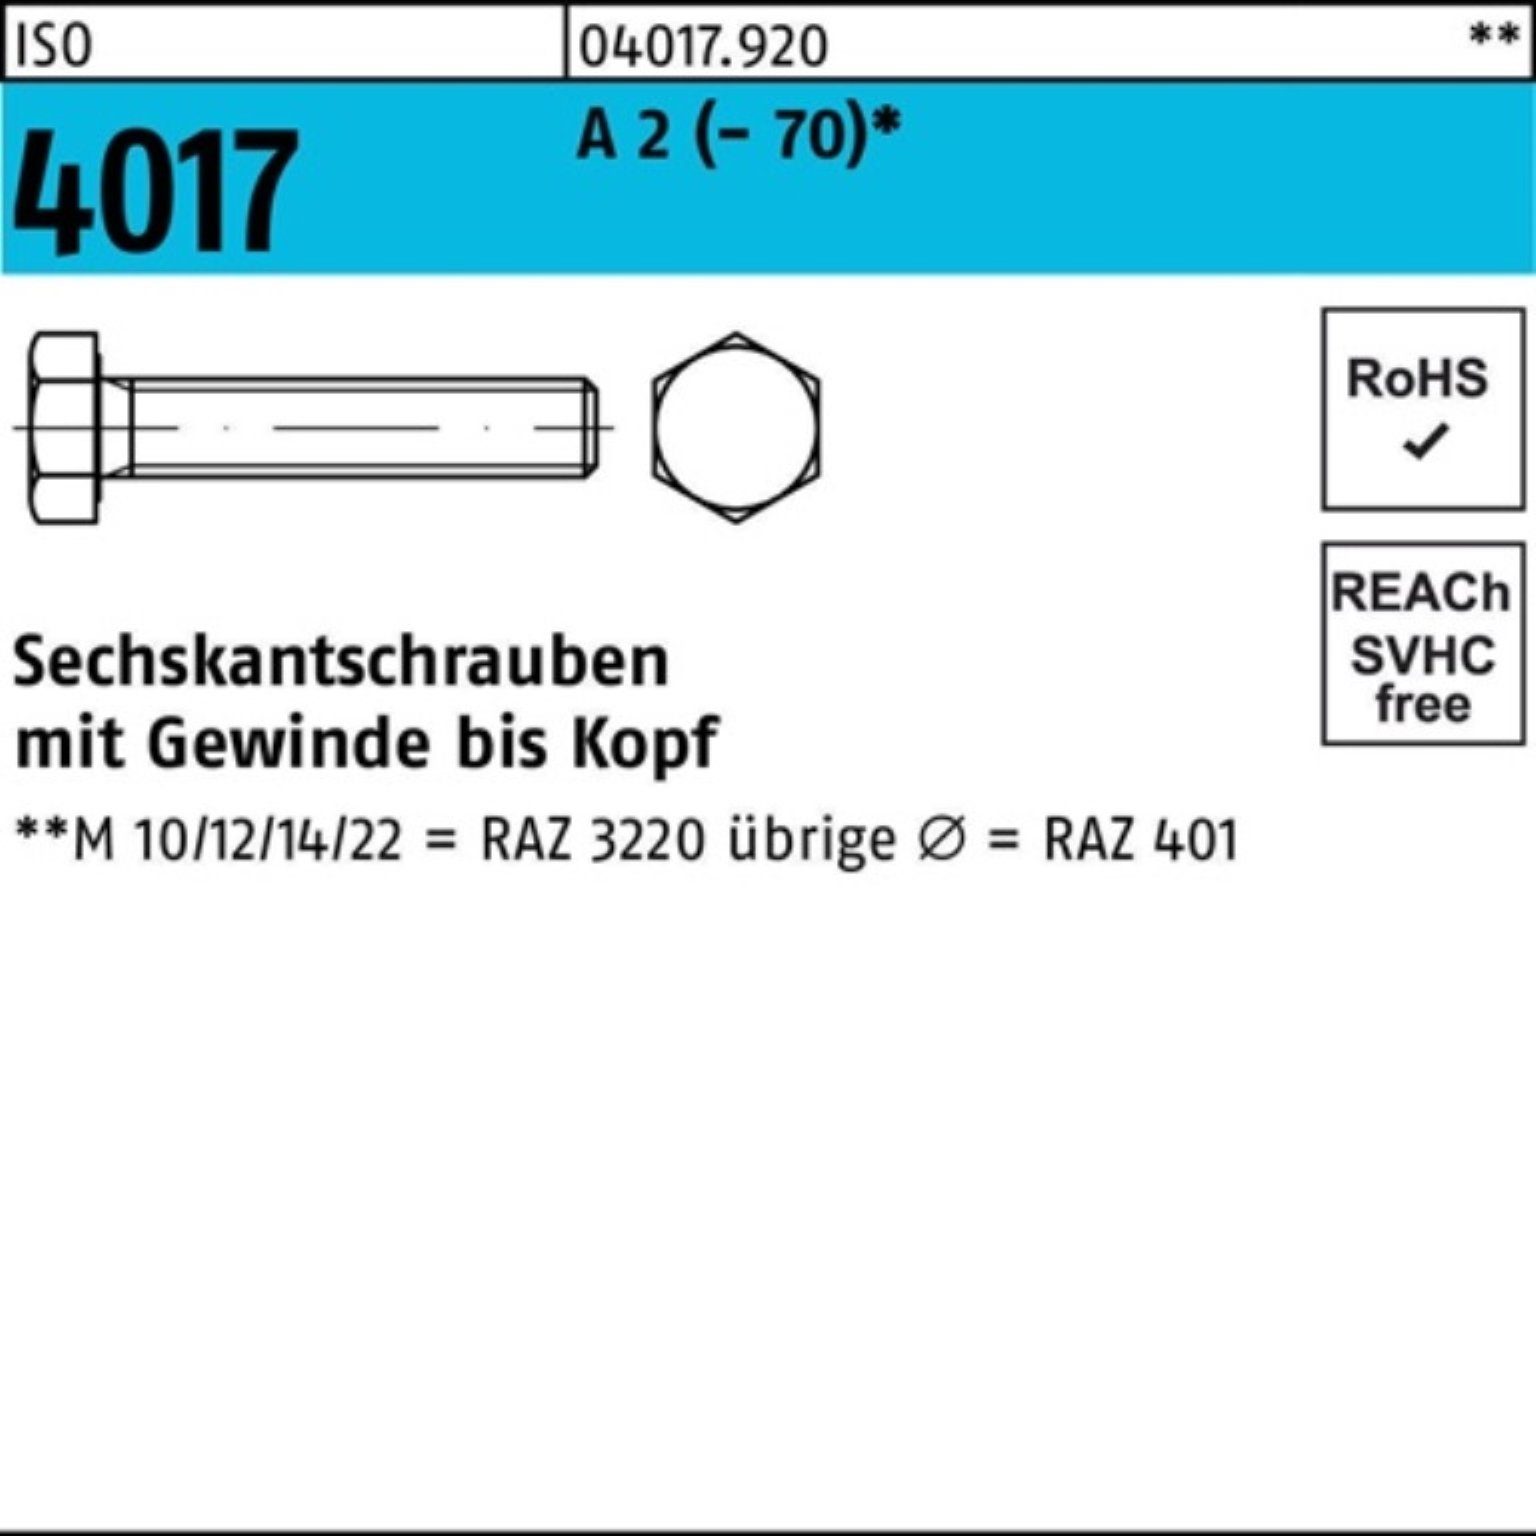 Bufab Sechskantschraube 100er Pack Sechskantschraube ISO 4017 VG M24x 70 A 2 (70) 10 Stück